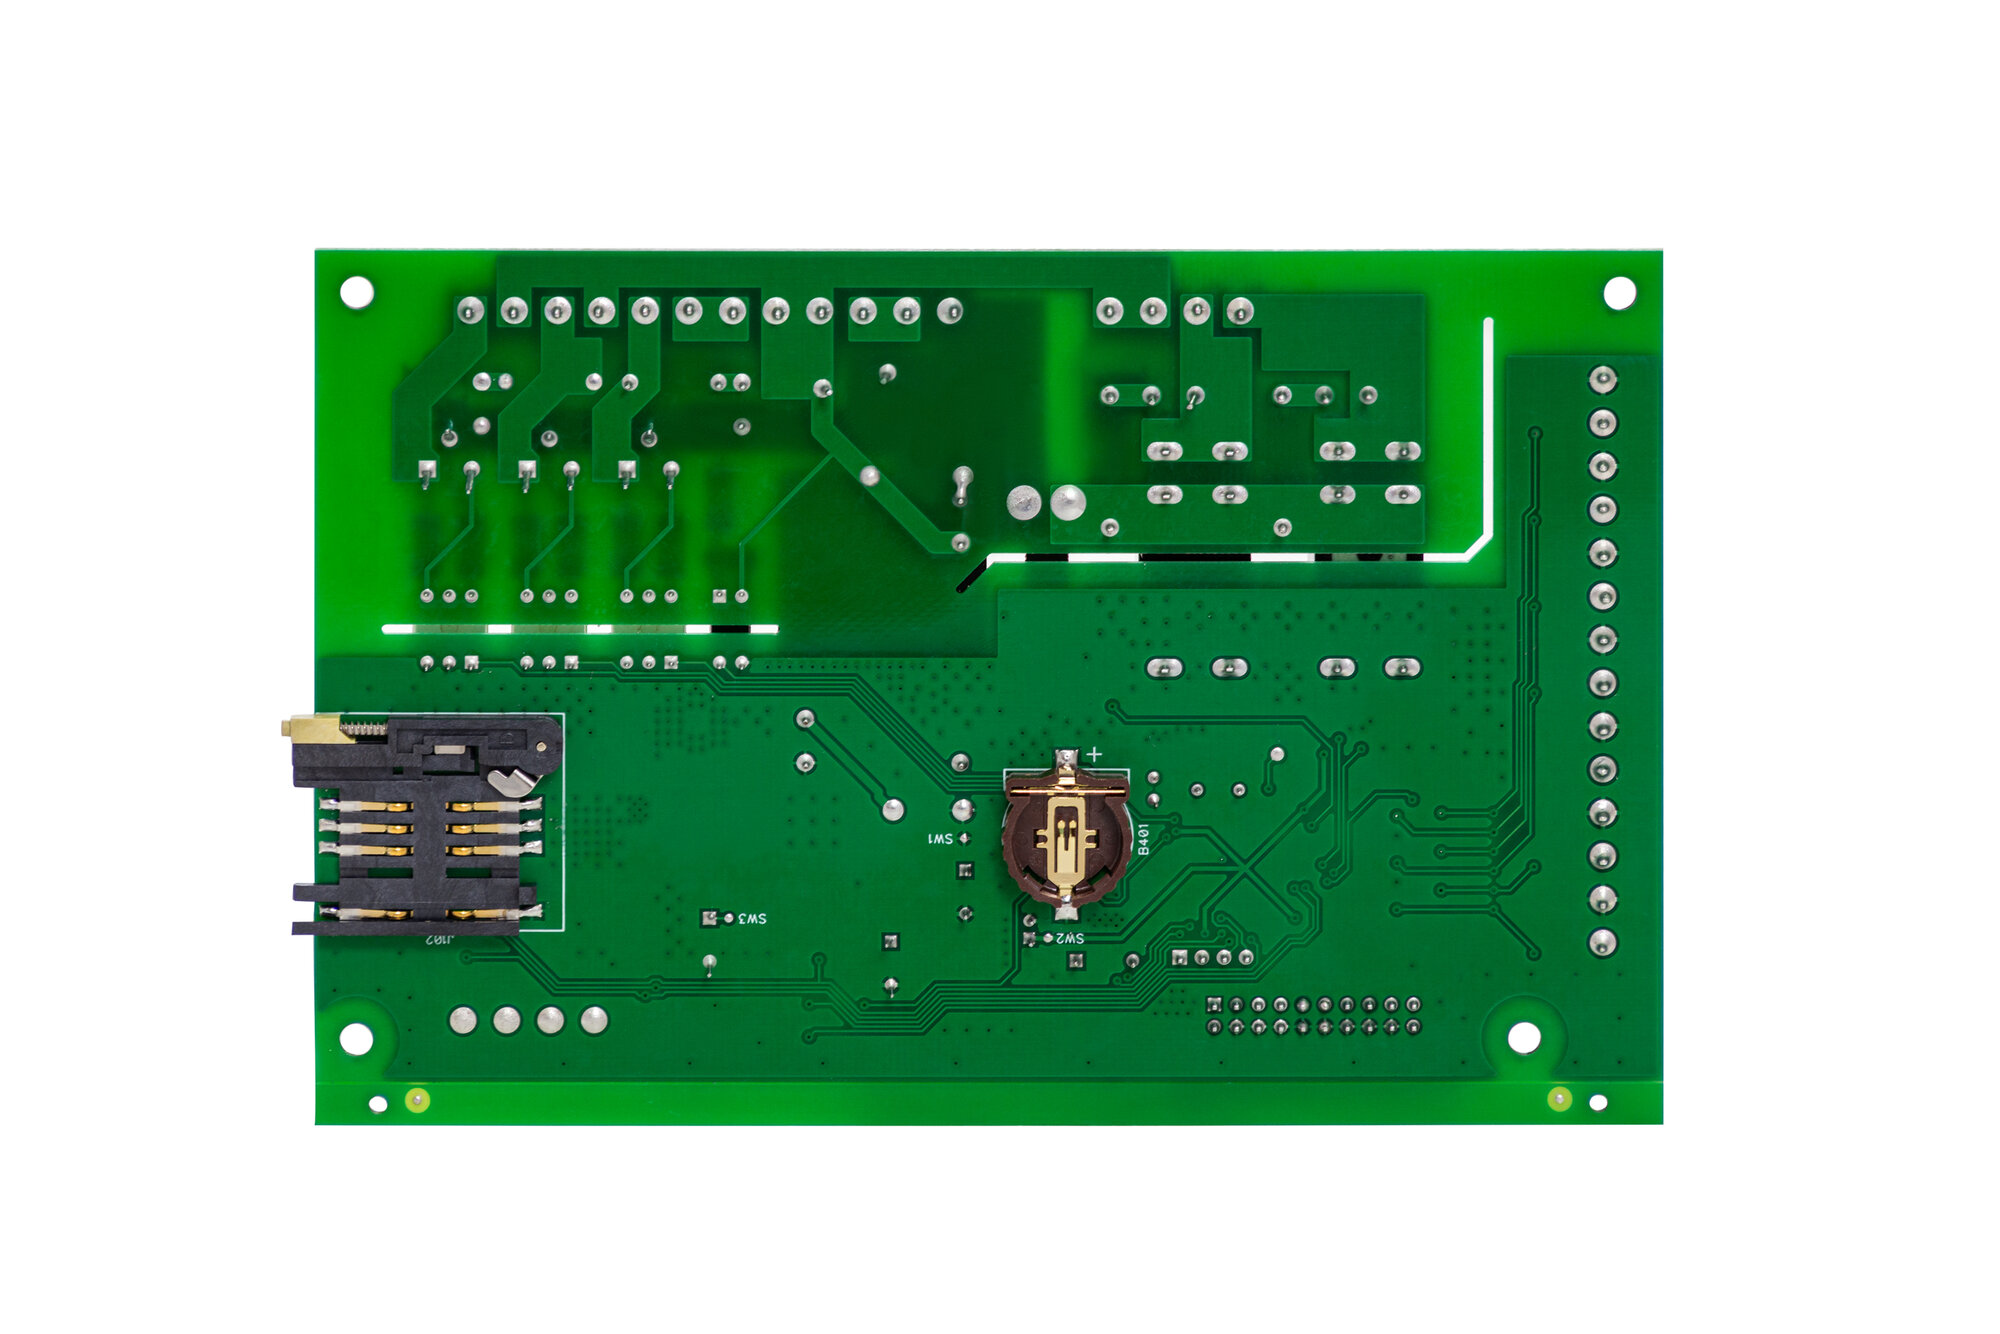 Блок коммутации - Плата управления для контроллера DM350 для твердотопливных шнековых автоматичеcких котлов с автореверсом шнека по току и GSM-модулем